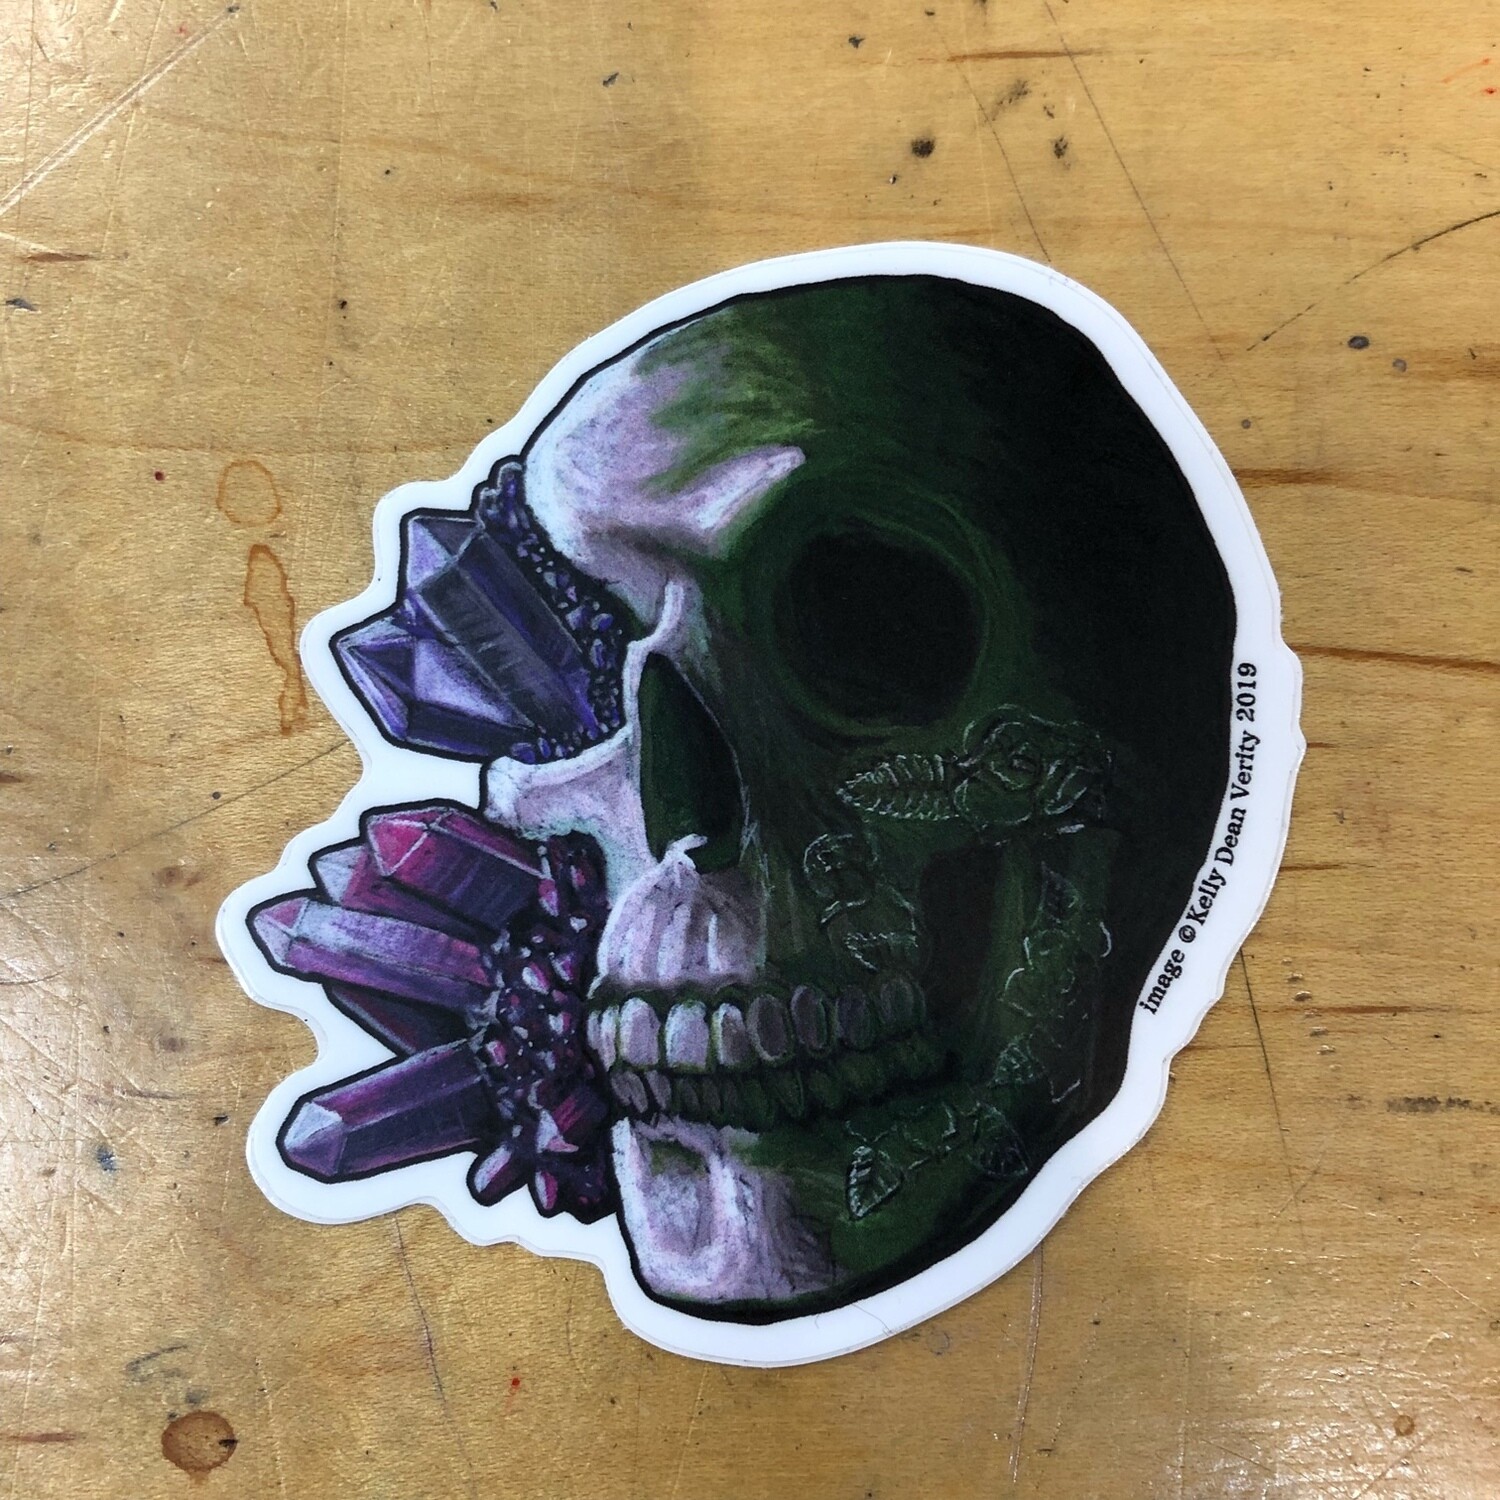 Crystal Skull 3 - Sticker by Kelly Dean Verity